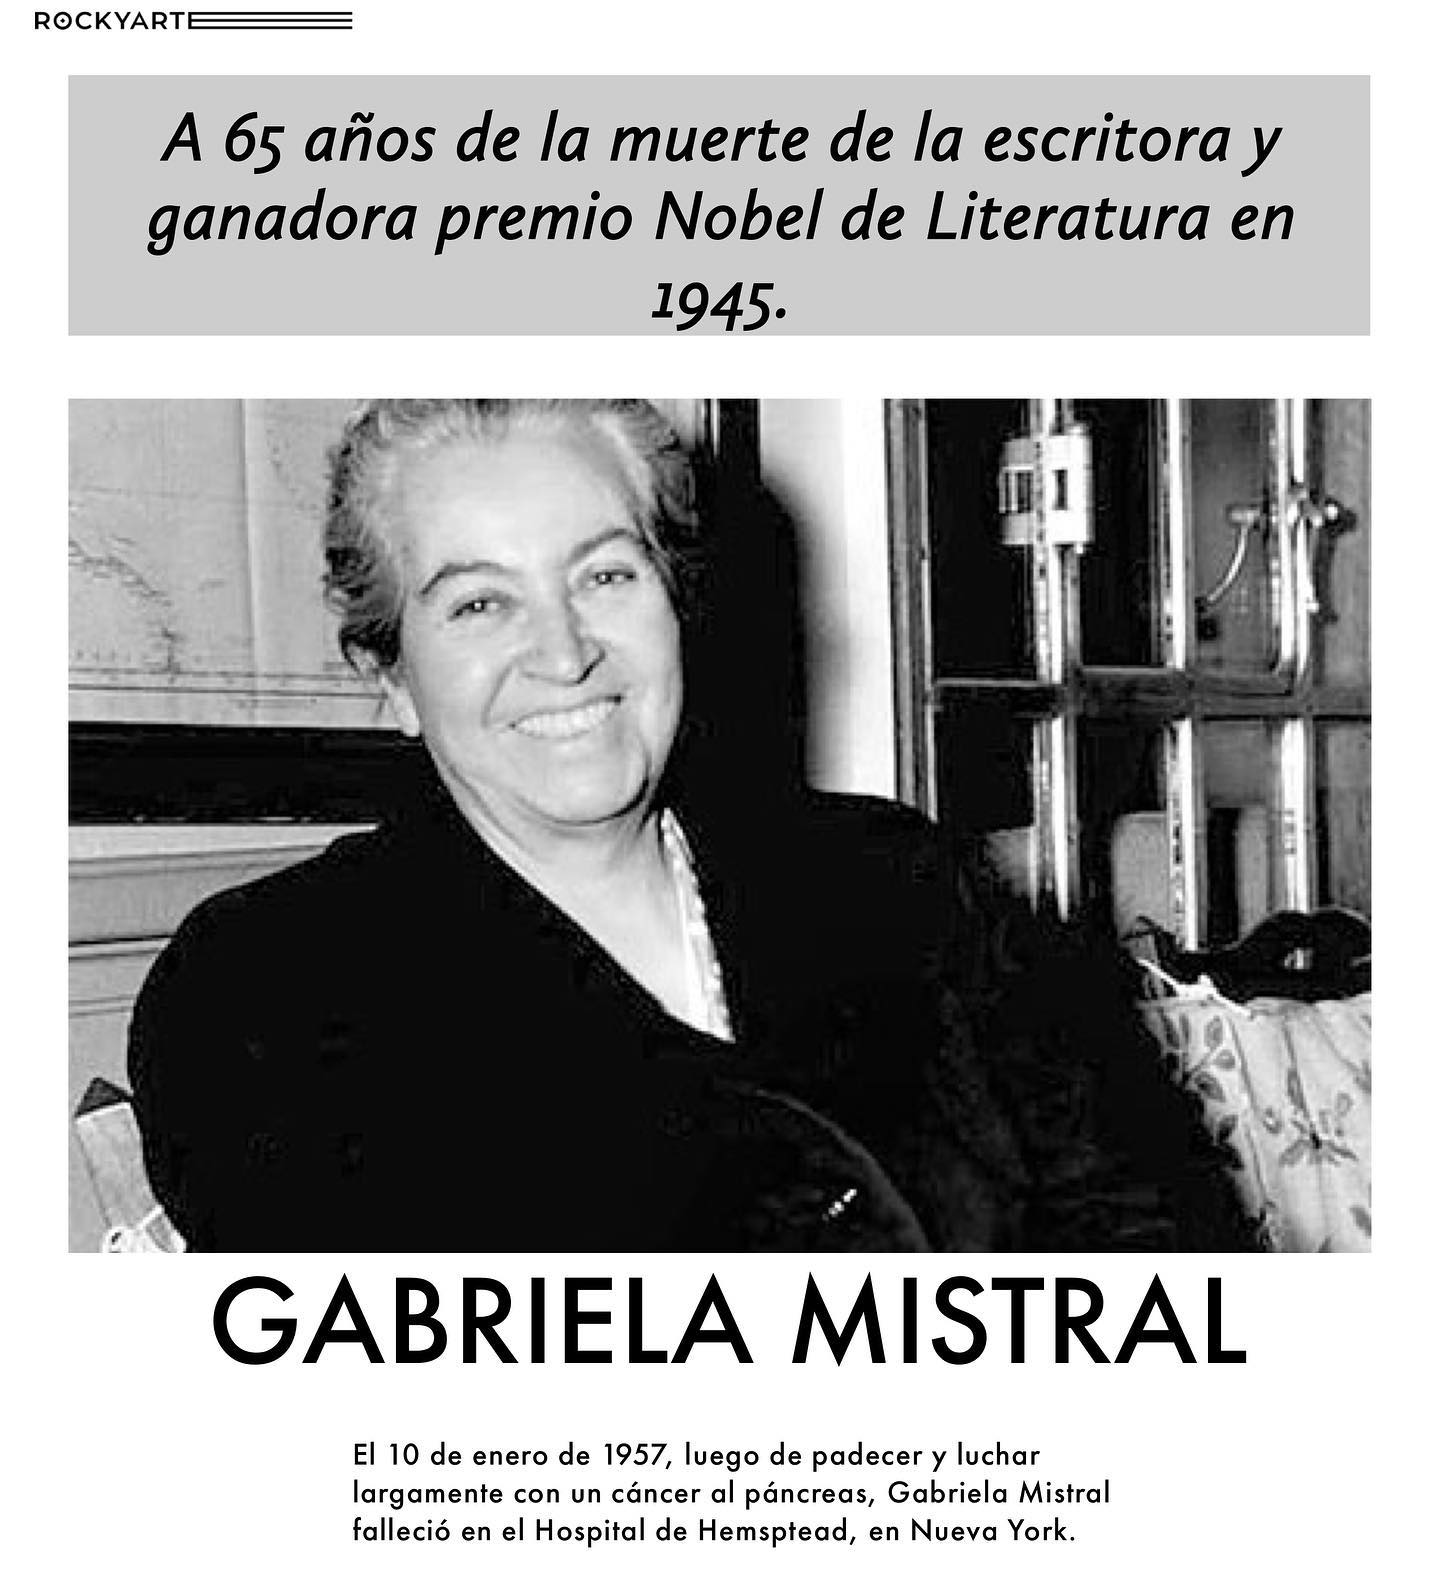 Gabriela Mistral, la poetisa, la docente rural y una de las figuras más relevantes de la literatura hispanoamericana moría en Nueva York. En 1945, se convirtió en la ganadora del Premio Nobel de Literatura, premio que, hasta entonces, no había sido otorgado a ningún latinoamericano de las letras. #literatura #autoras #mujer